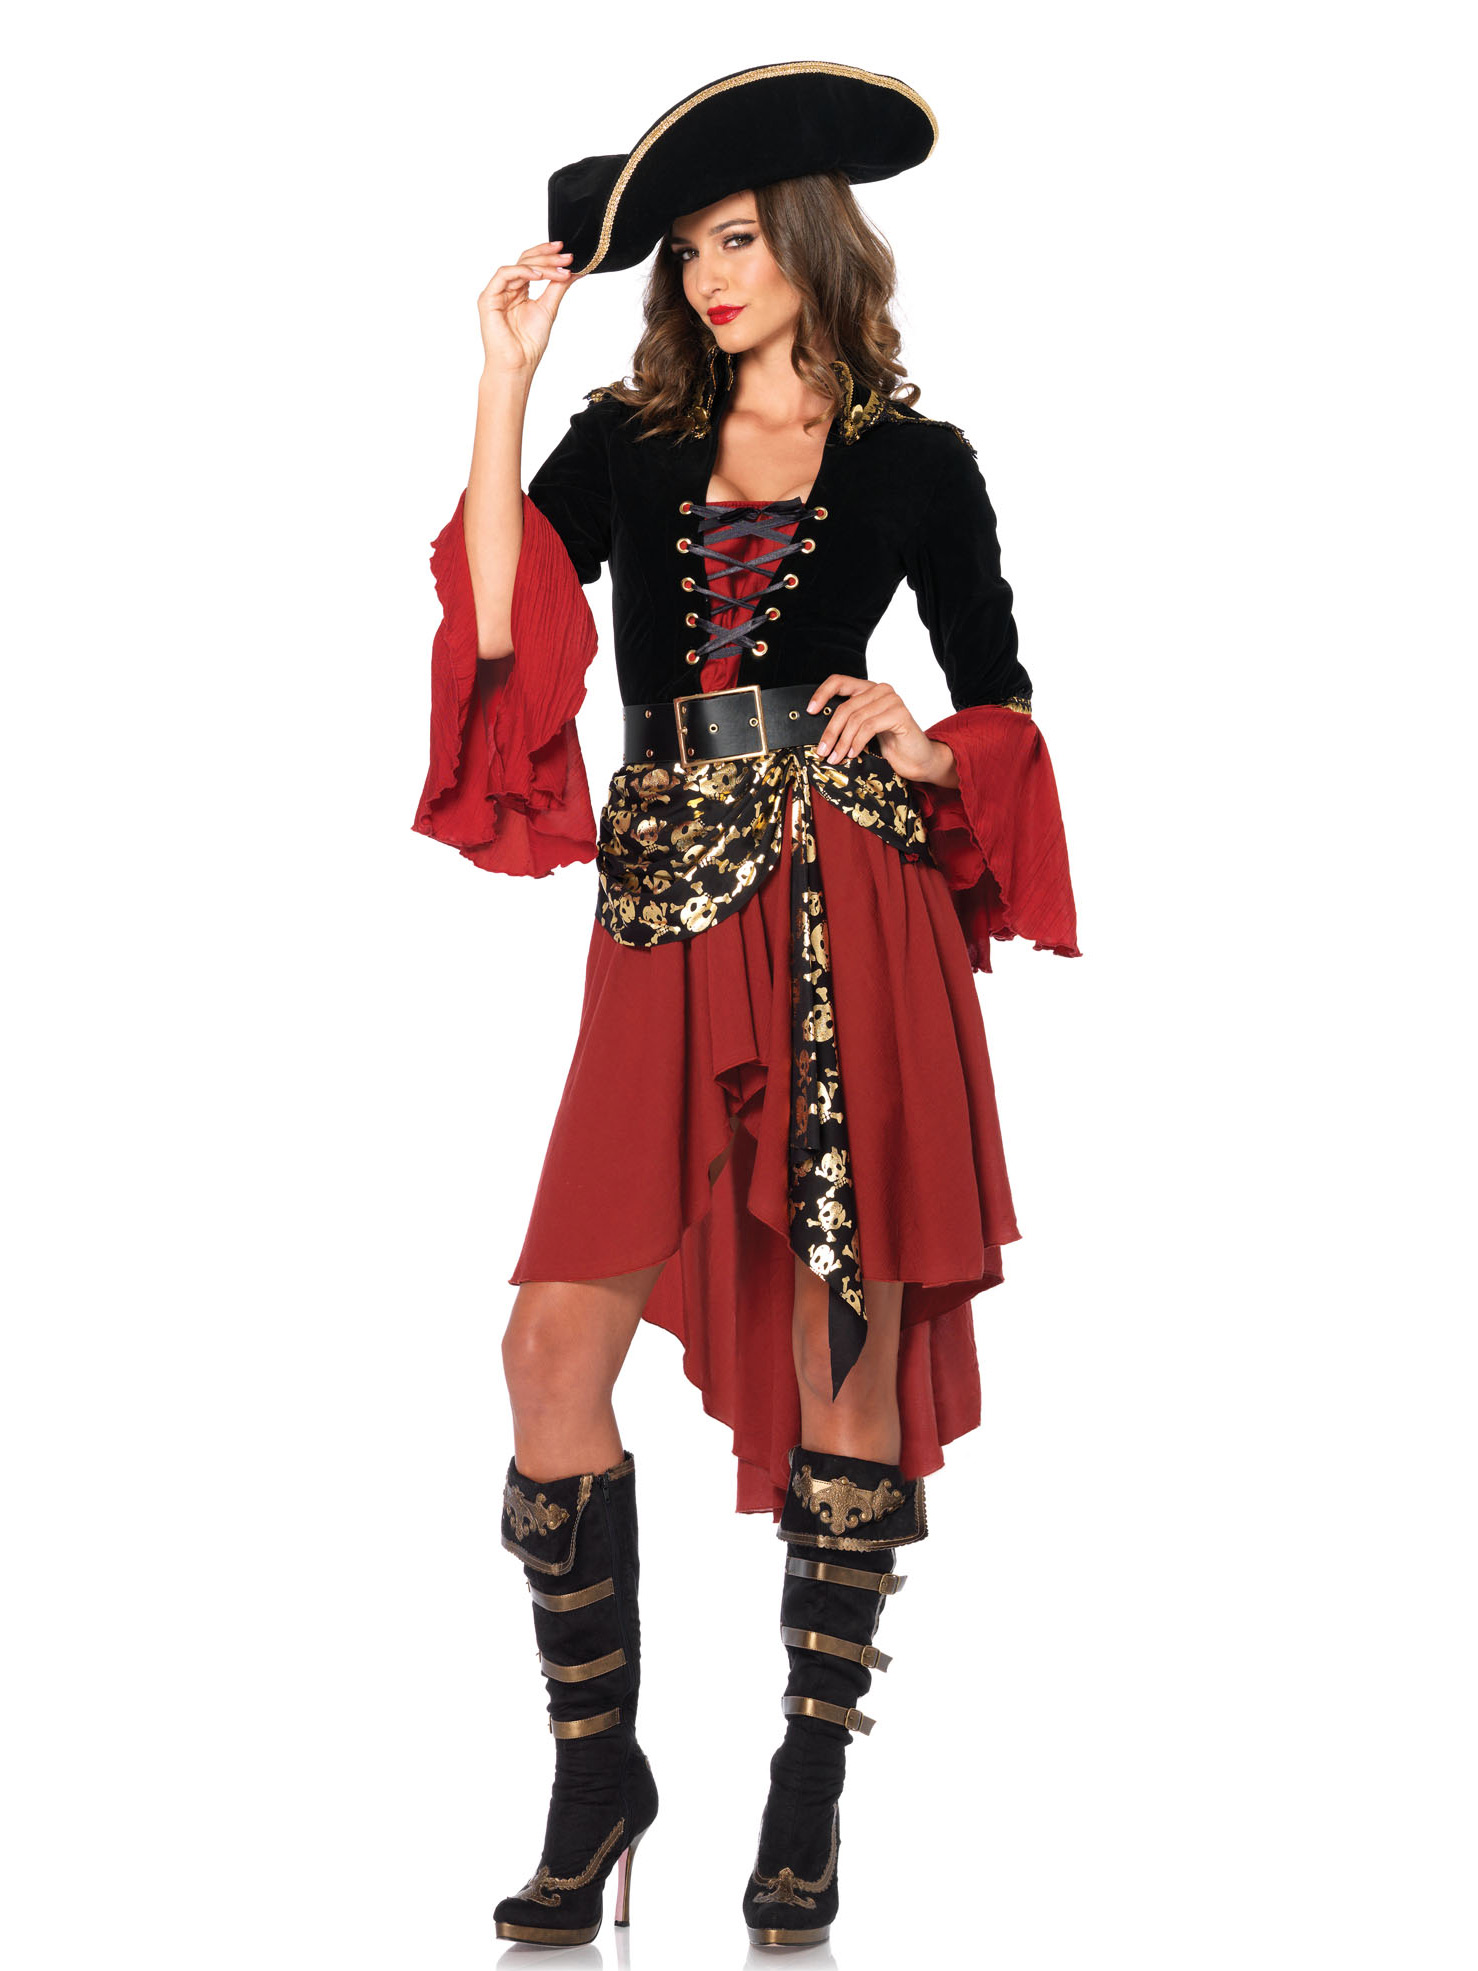 Frauen FaschingskostÃ¼me Schön Elegantes Piraten Kostüm Für Frauen Kostüme Für